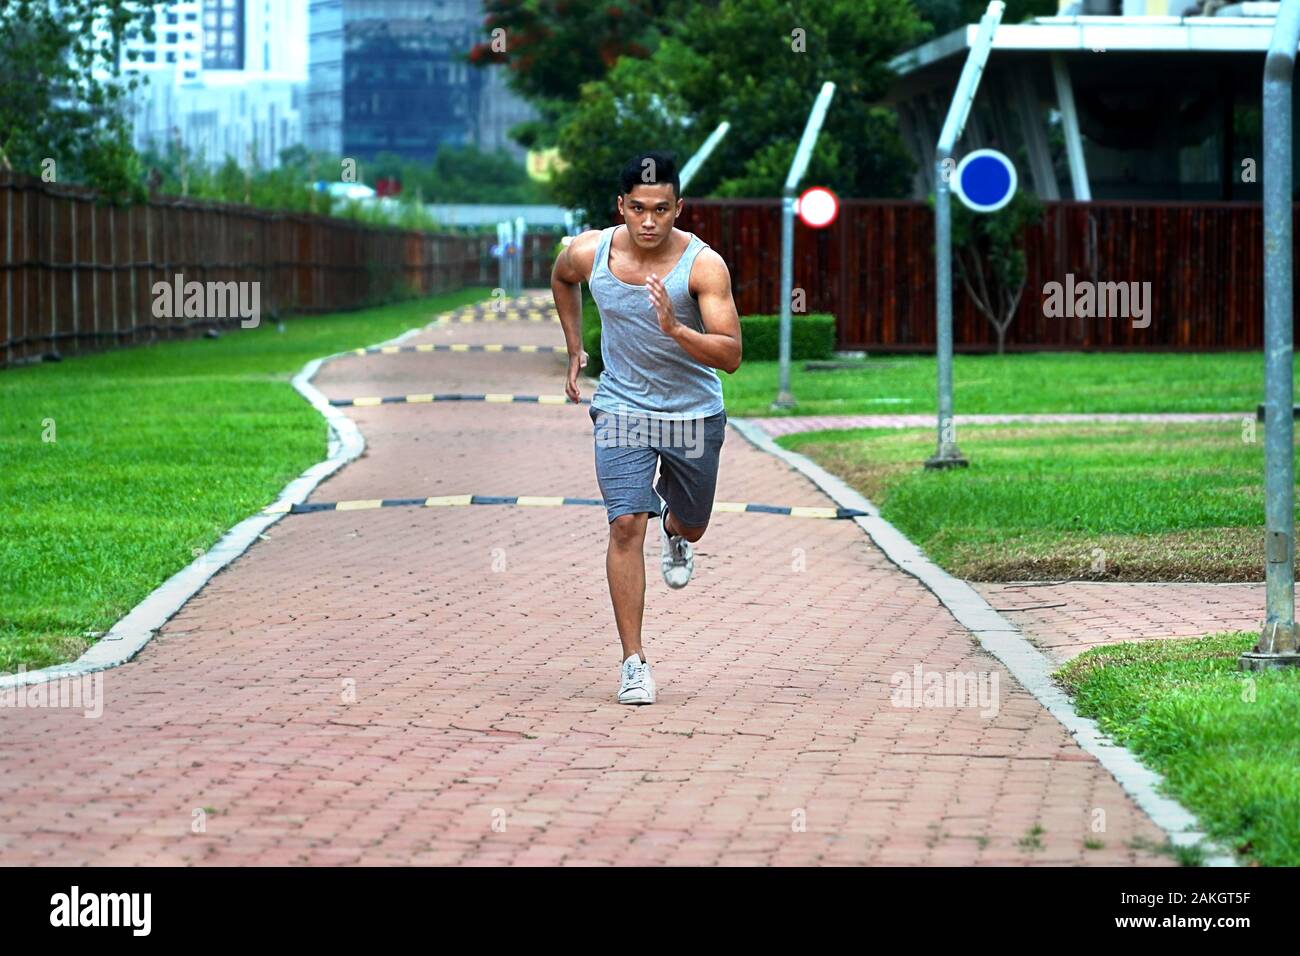 Junge asiatische Männer laufen vor die Kamera - Begeisterung junge Sport am Nachmittag auf dem Campus Stockfoto